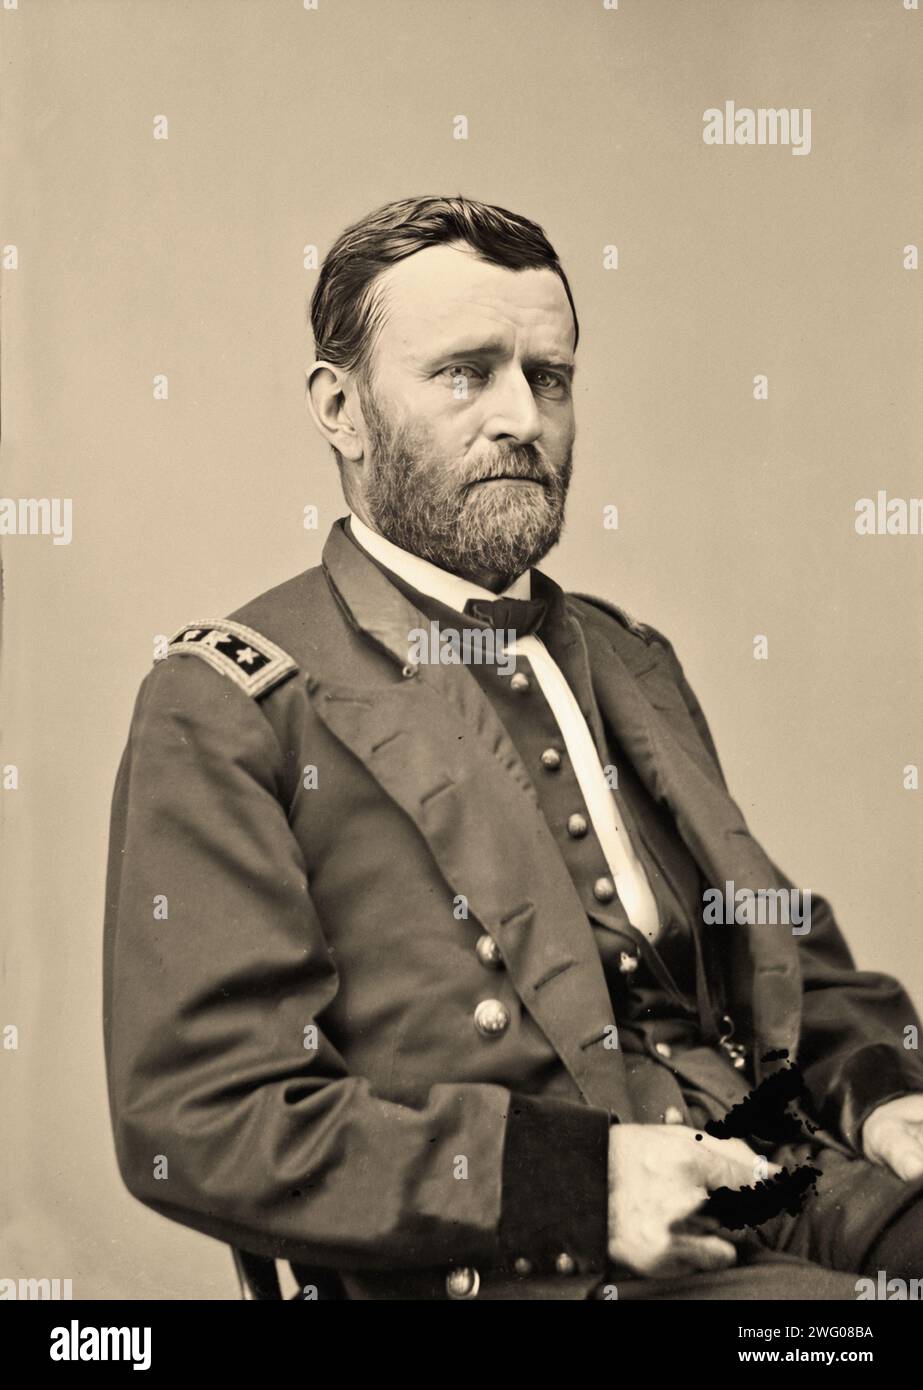 Ritratto di Ulysses S. Grant in uniforme militare ufficiale militare e politico americano che servì come diciottesimo presidente degli Stati Uniti dal 1869 al 1877. Come comandante generale, guidò l'esercito dell'Unione alla vittoria nella guerra civile americana Foto Stock